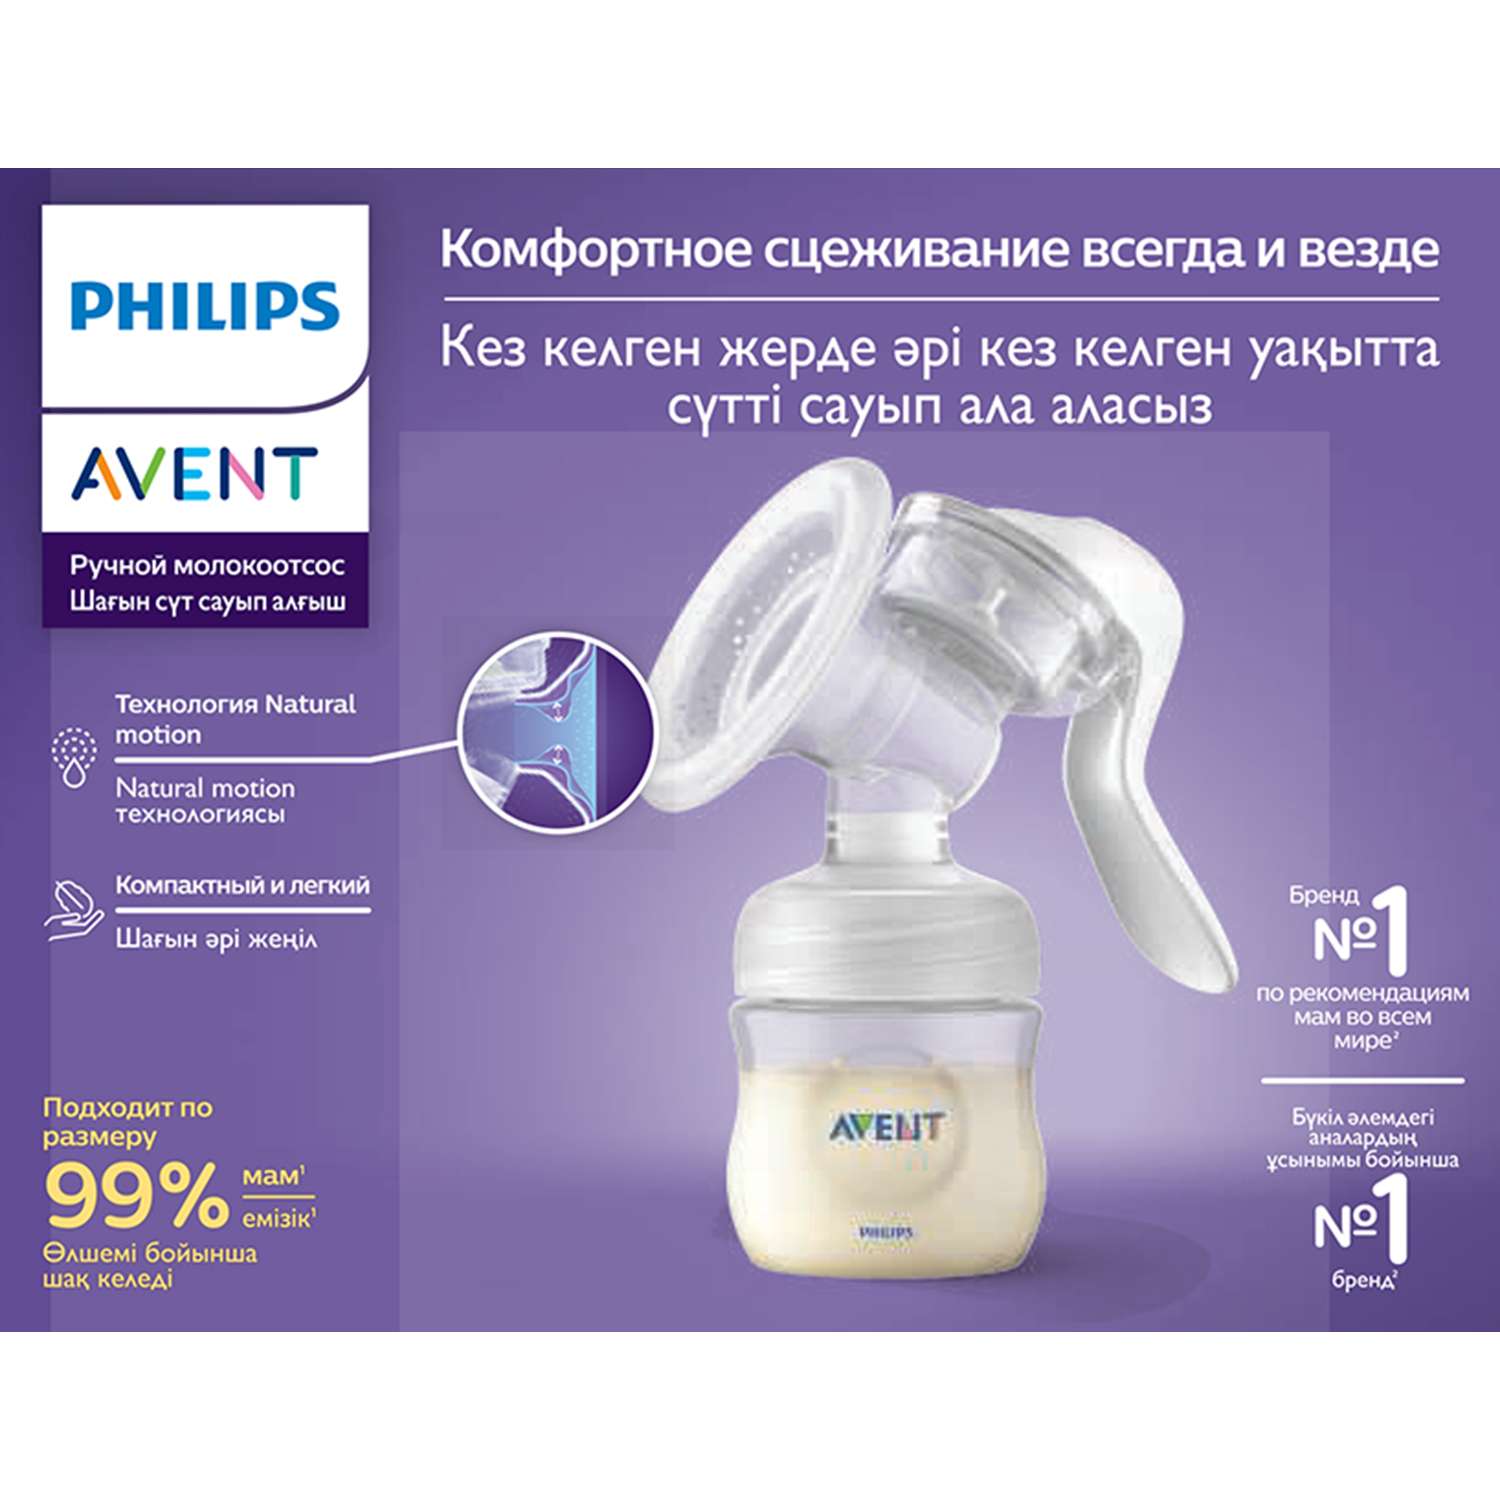 Ручной молокоотсос Philips AVENT Comfort SCF330/12